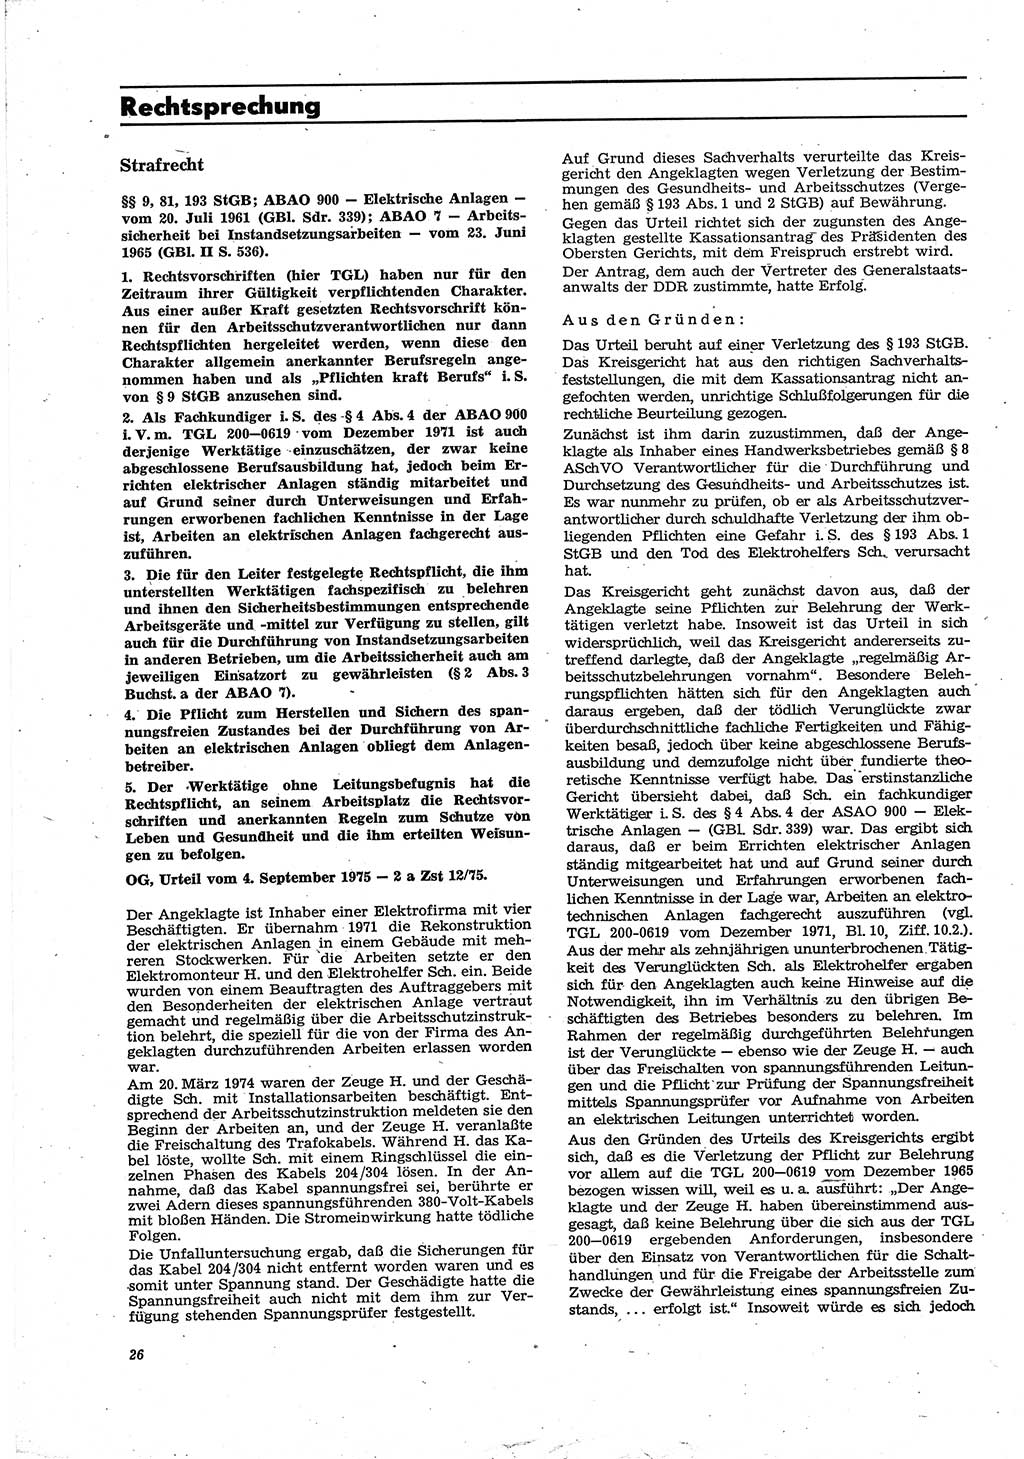 Neue Justiz (NJ), Zeitschrift für Recht und Rechtswissenschaft [Deutsche Demokratische Republik (DDR)], 30. Jahrgang 1976, Seite 26 (NJ DDR 1976, S. 26)